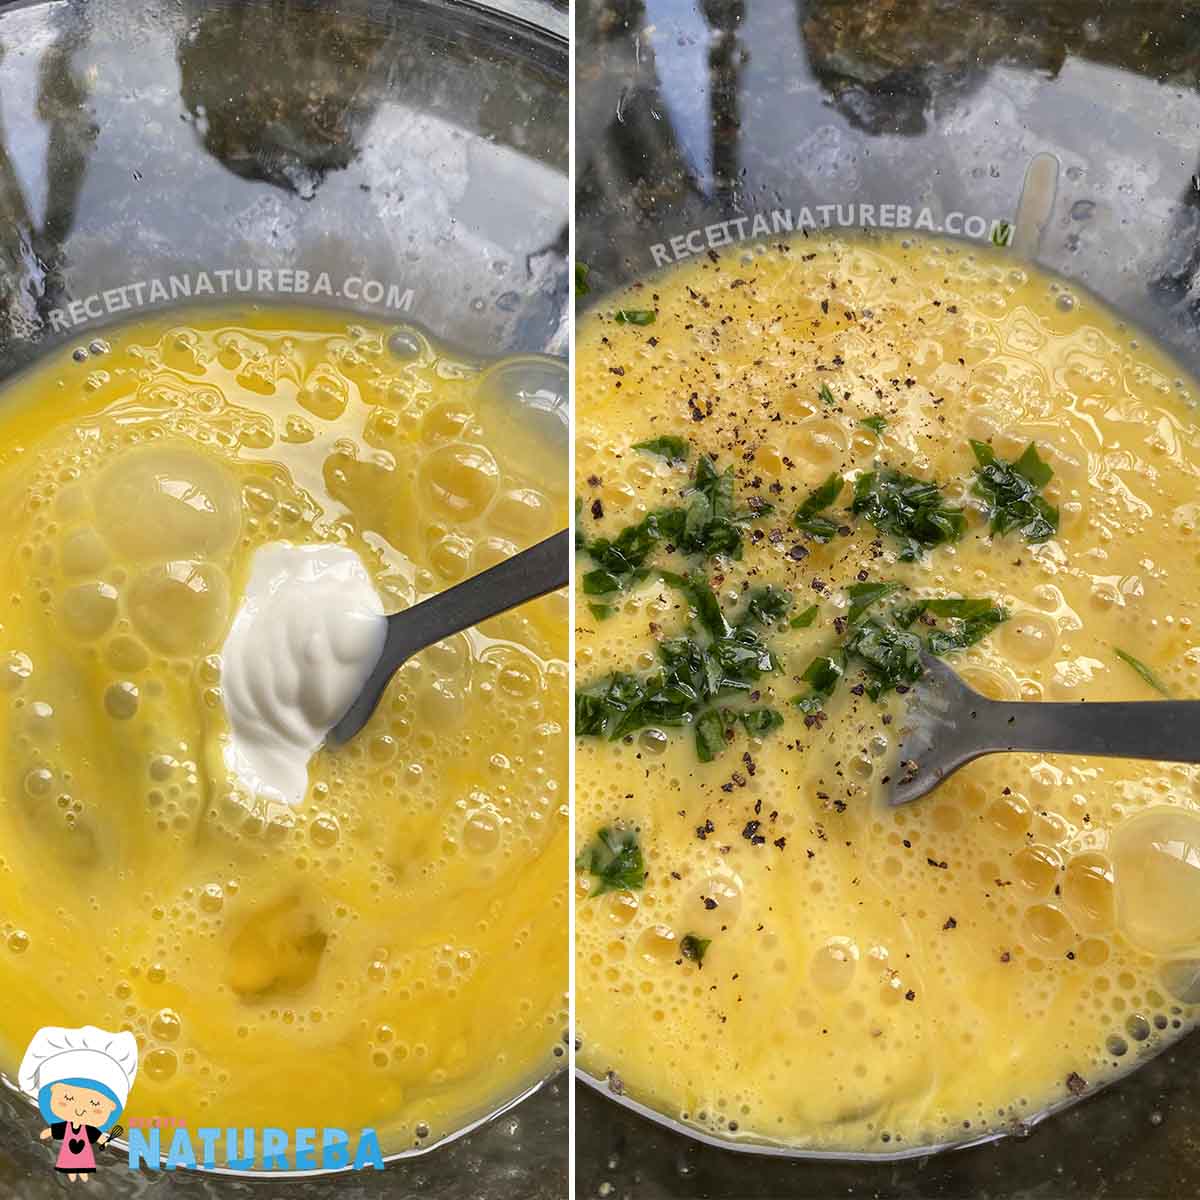 adicionando salsinha e creme de leite no omelete